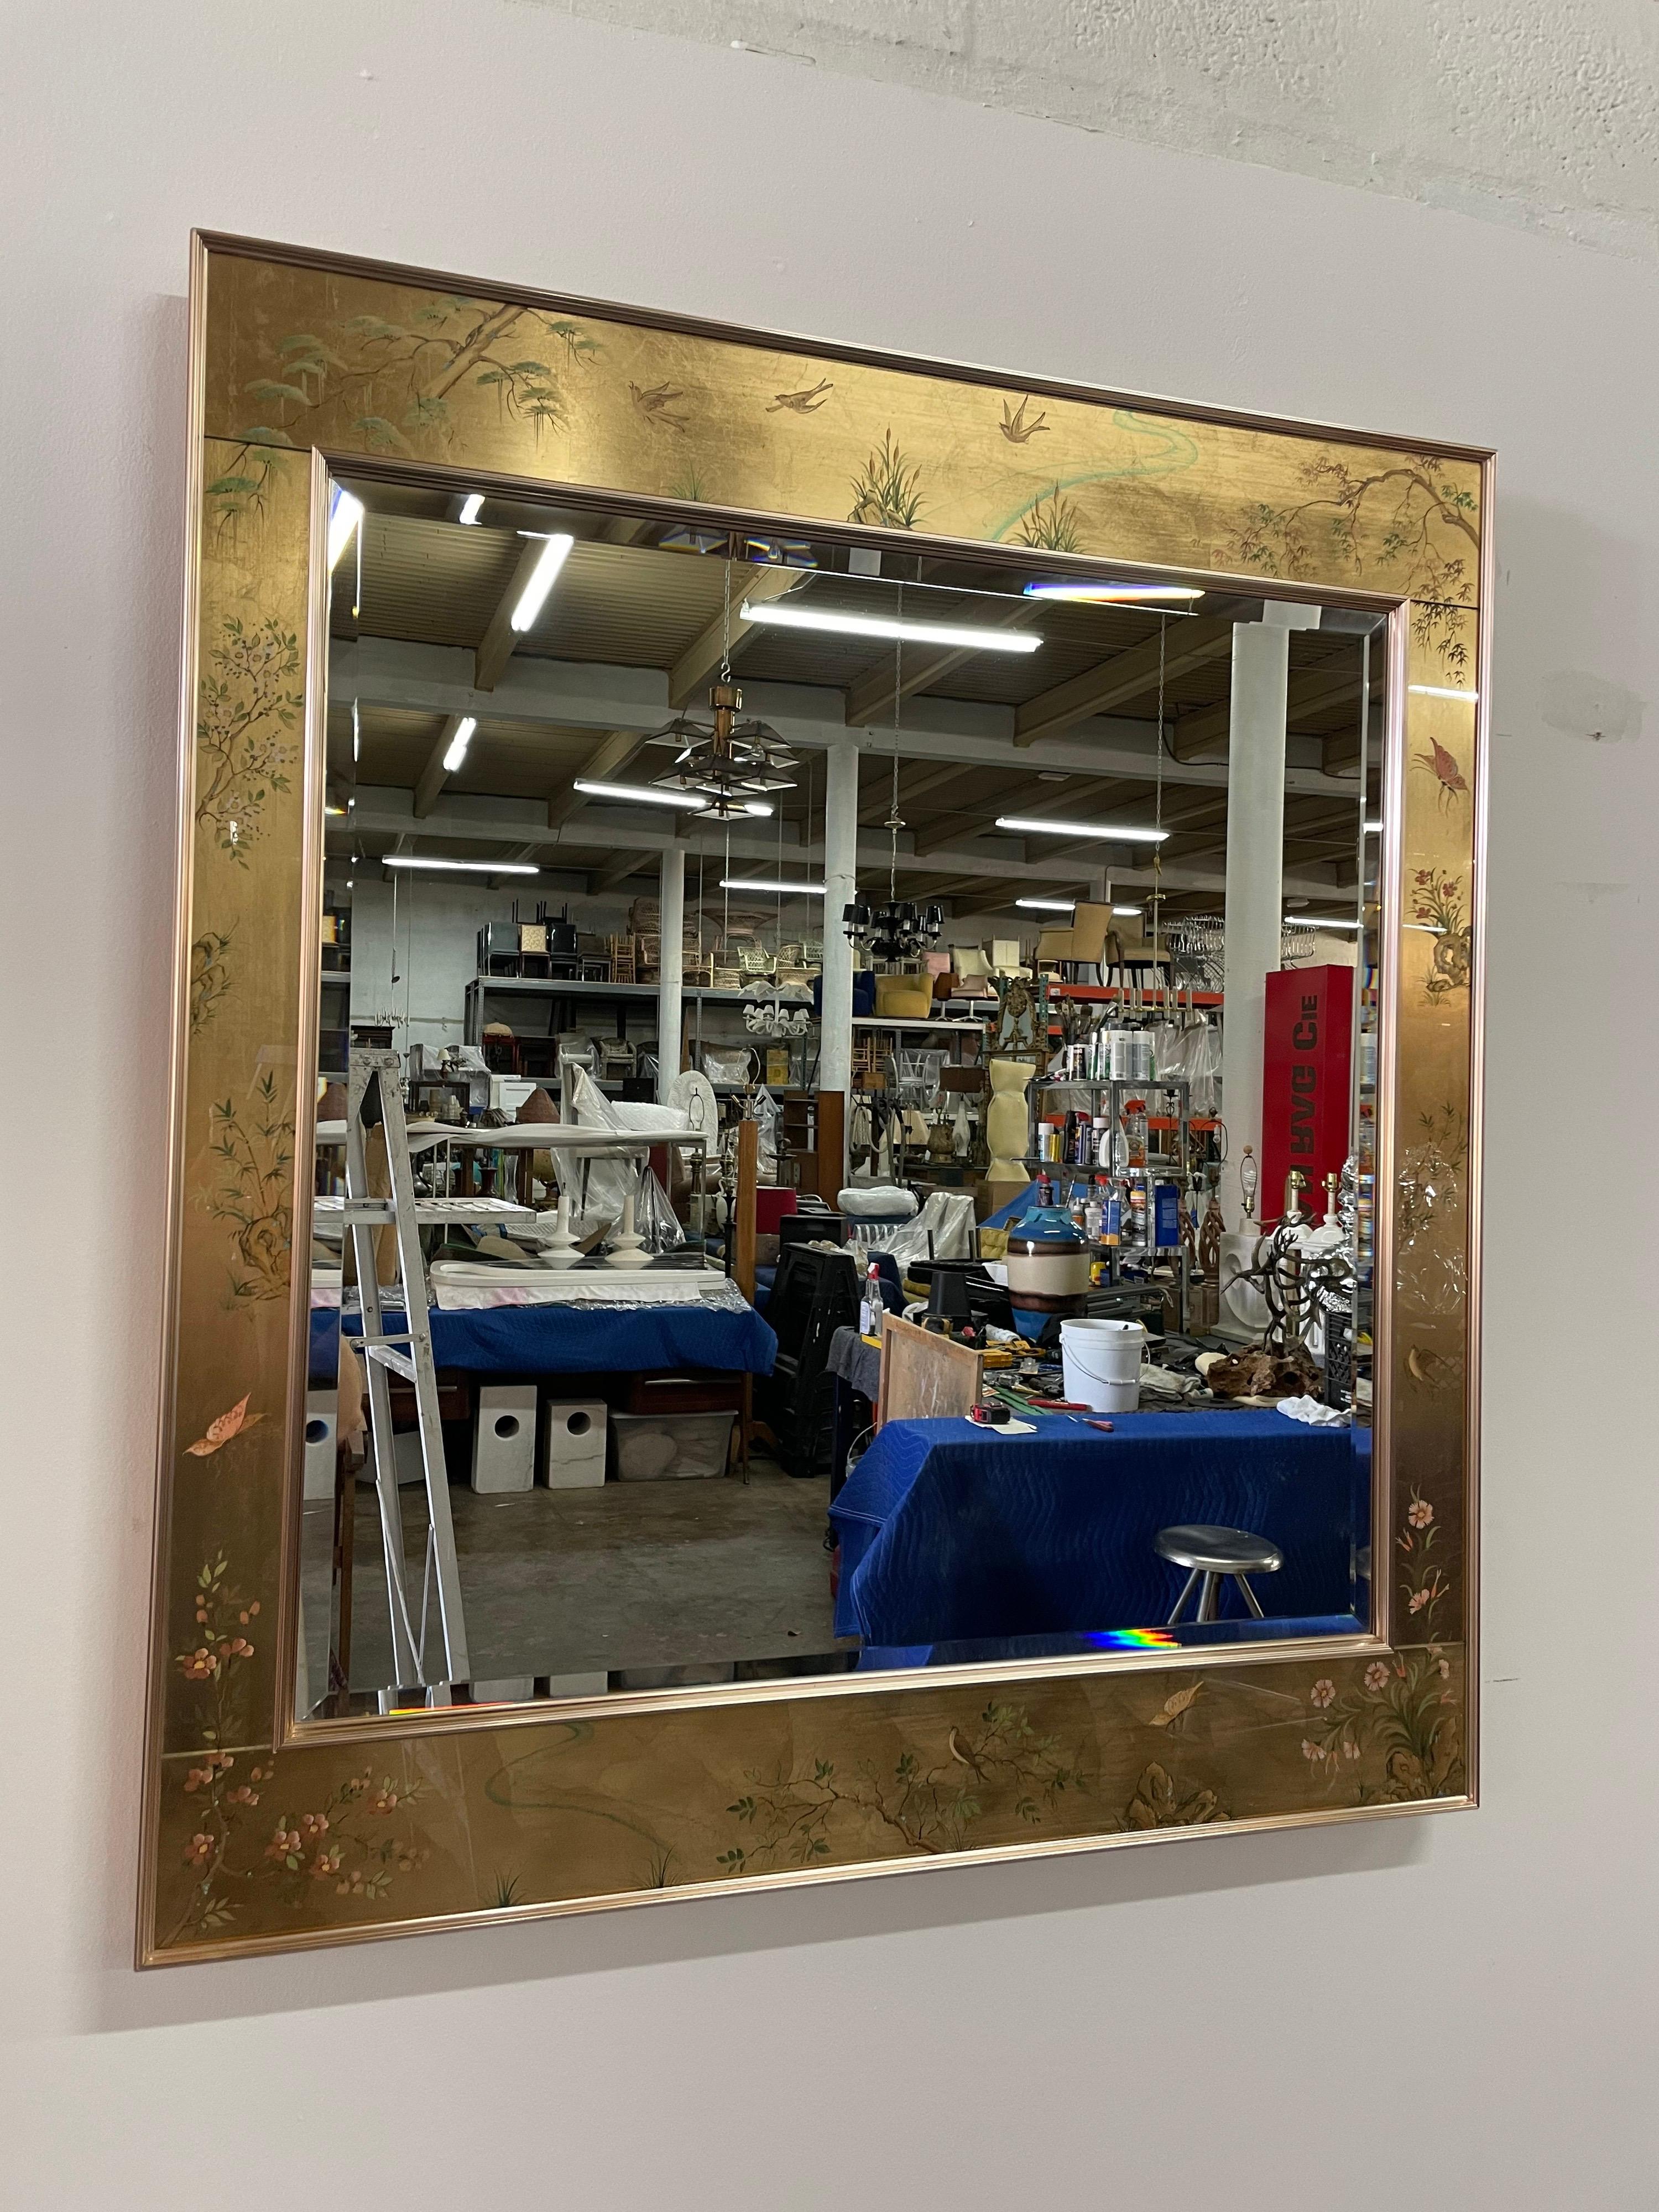 Ce magnifique et élégant miroir biseauté peint à la main en chinoiserie inversée et encadré de feuilles d'or, Signé en bas (K, Widing). Le cadre en aluminium doré entoure le miroir biseauté et la bande décorative. C'est le plus grand de ce modèle